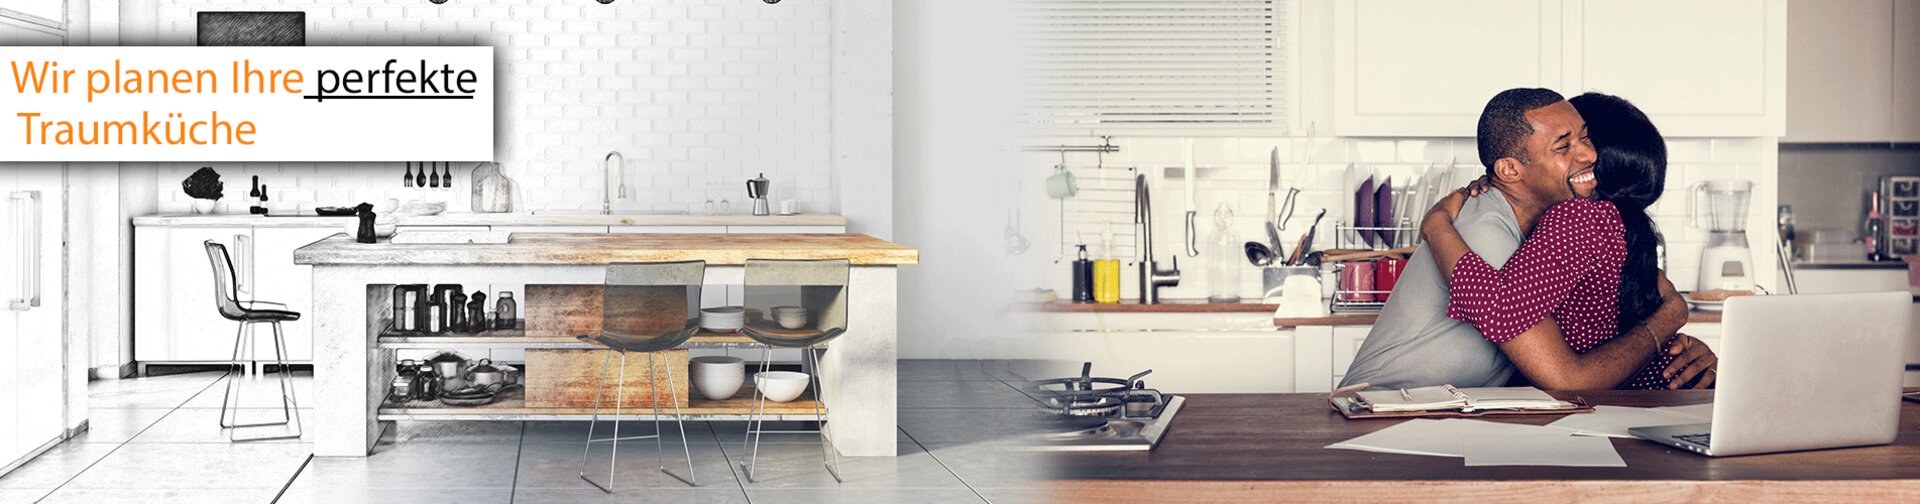 Titelbild zu "Küche Planen" mit Möbel Inhofer